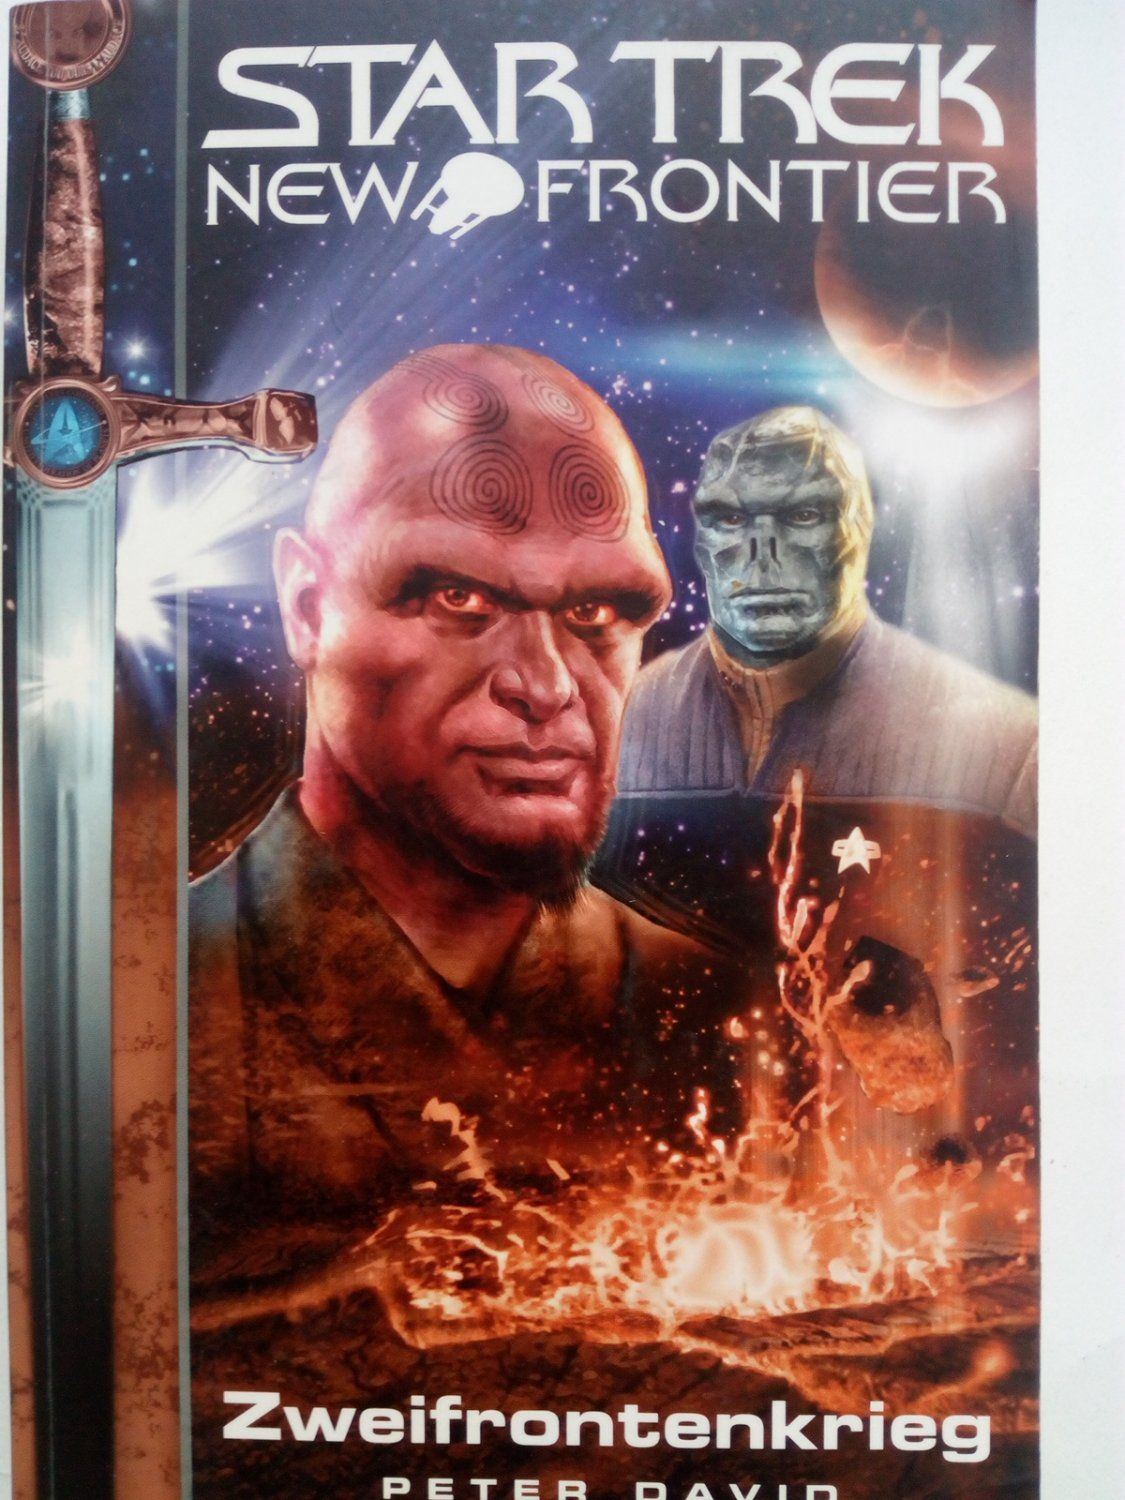 Star Trek - New Frontier 2 - Zweifrontenkrieg - David, Peter